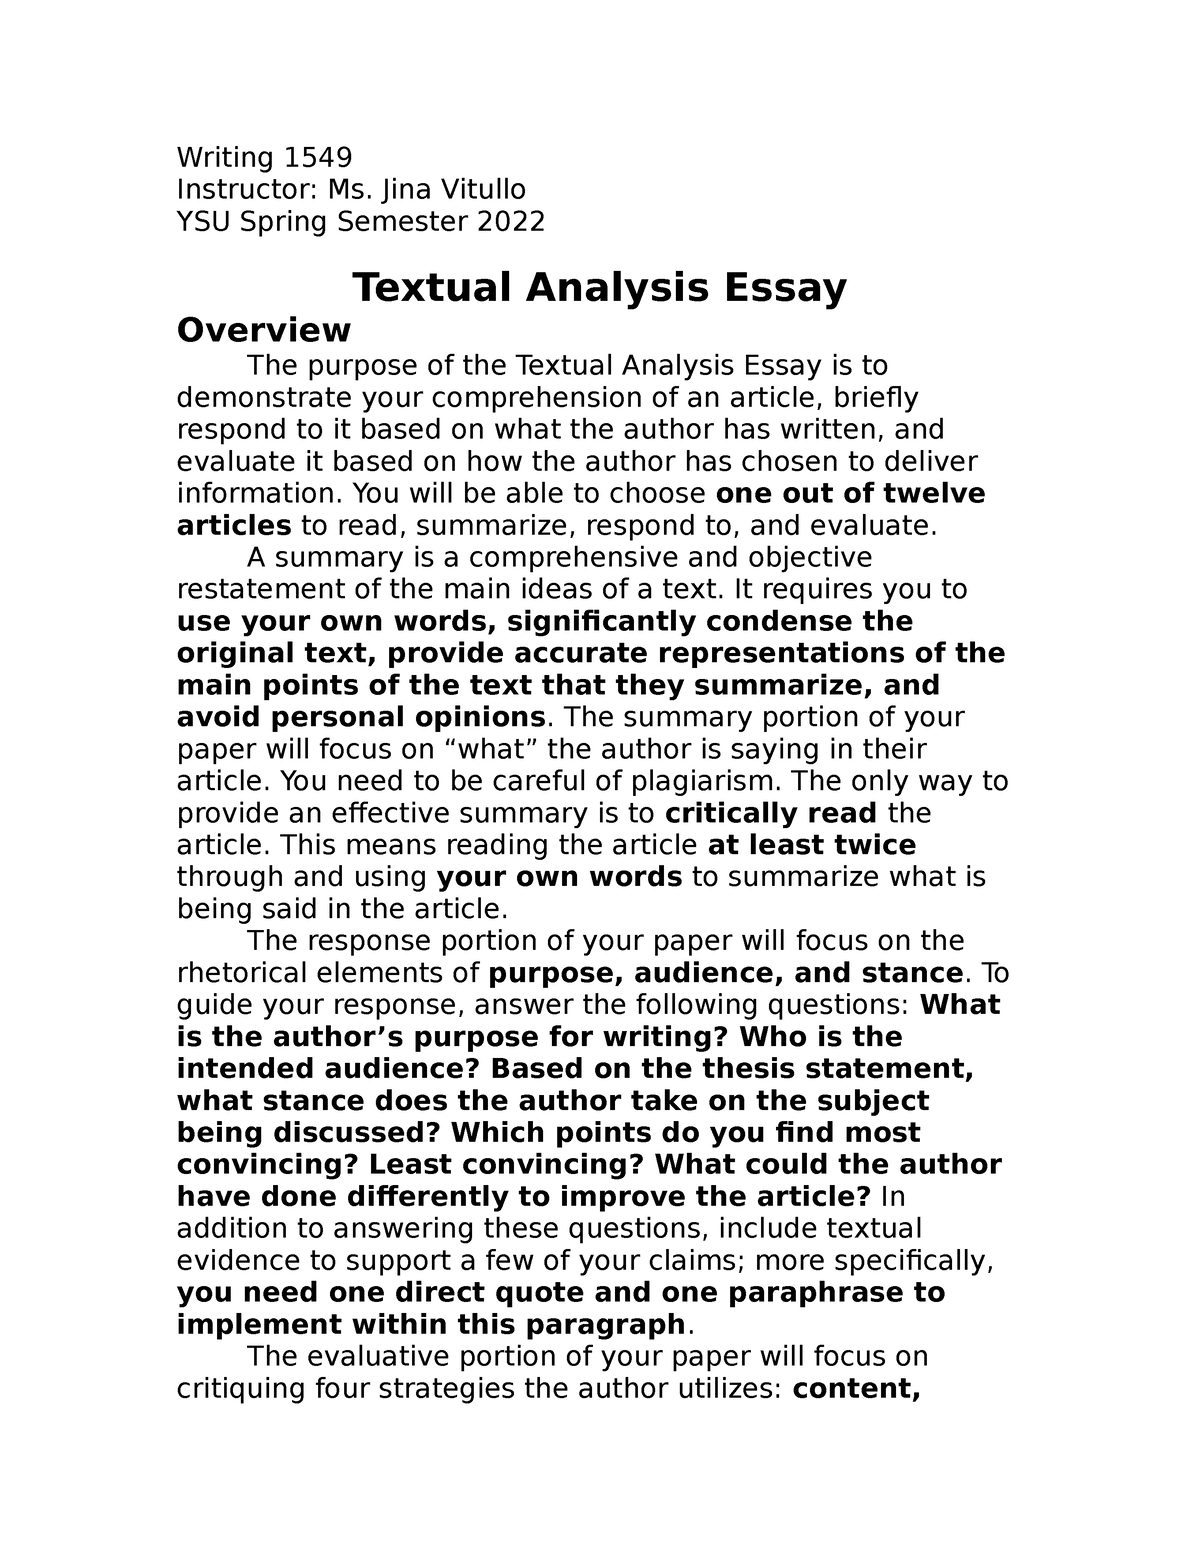 textual analysis essay example pdf